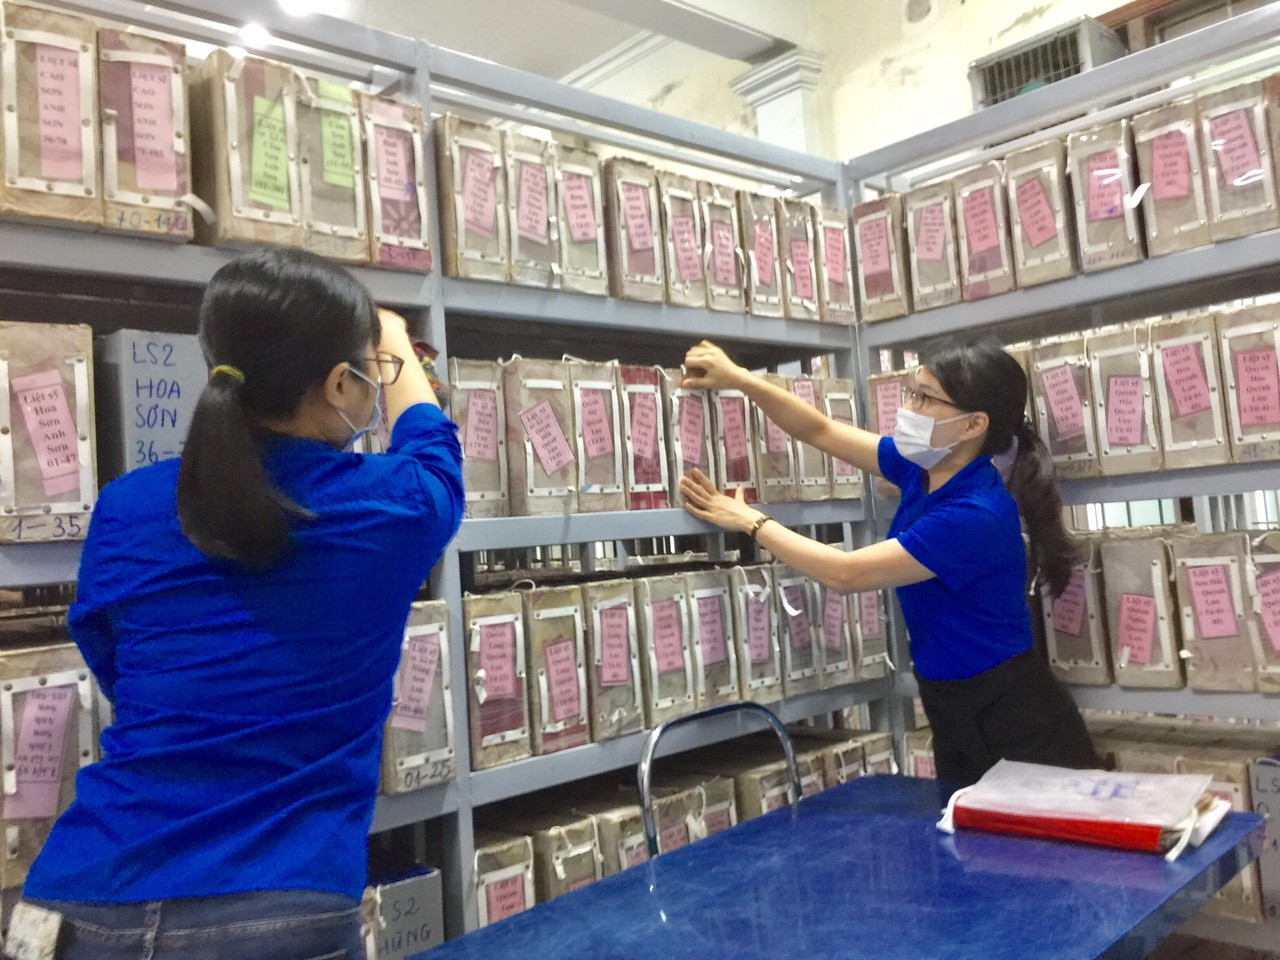 Ngày 26/7/2021, tổ chức sắp xếp, chỉnh trang và làm vệ sinh kho lưu trữ hơn 200.000 hồ sơ người có công với cách mạng tại văn phòng Sở Lao động Thương binh và Xã hội Nghệ An